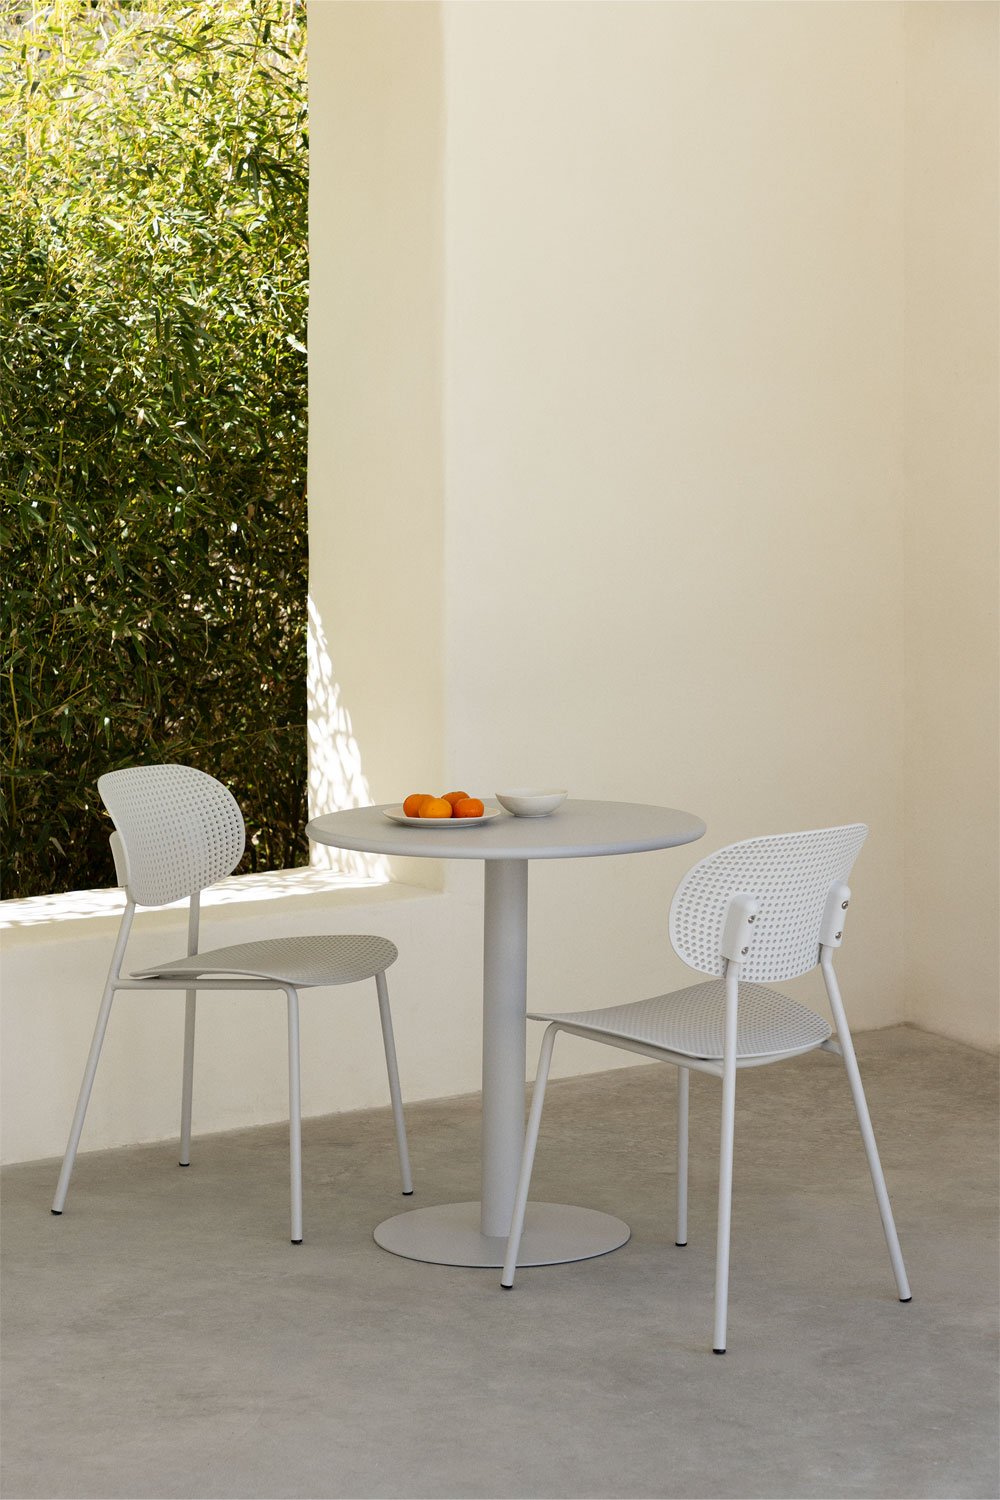 Zestaw okrągłego stołu Mizzi (ø70 cm) i 2 krzesła ogrodowe Tupah, obrazek w galerii 1